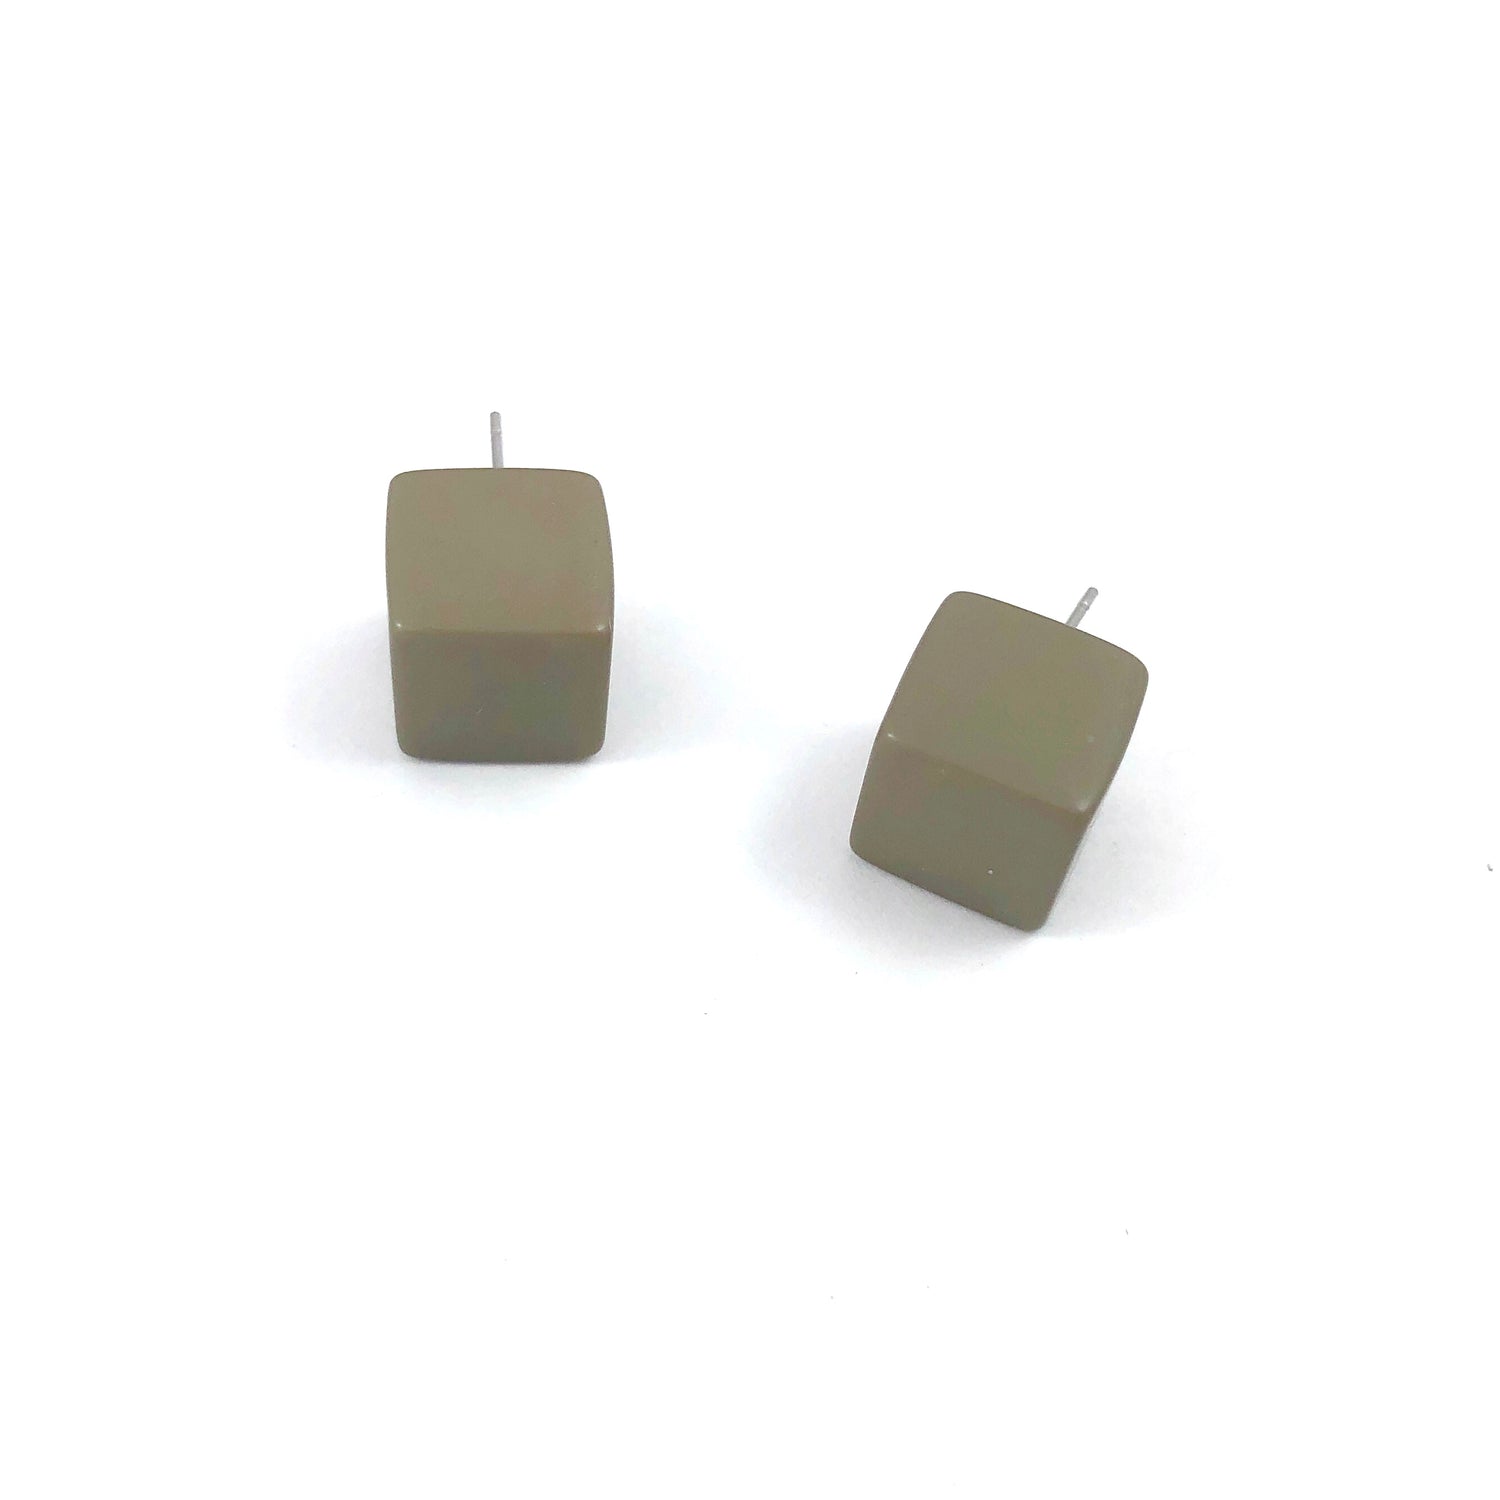 leetie green cubes